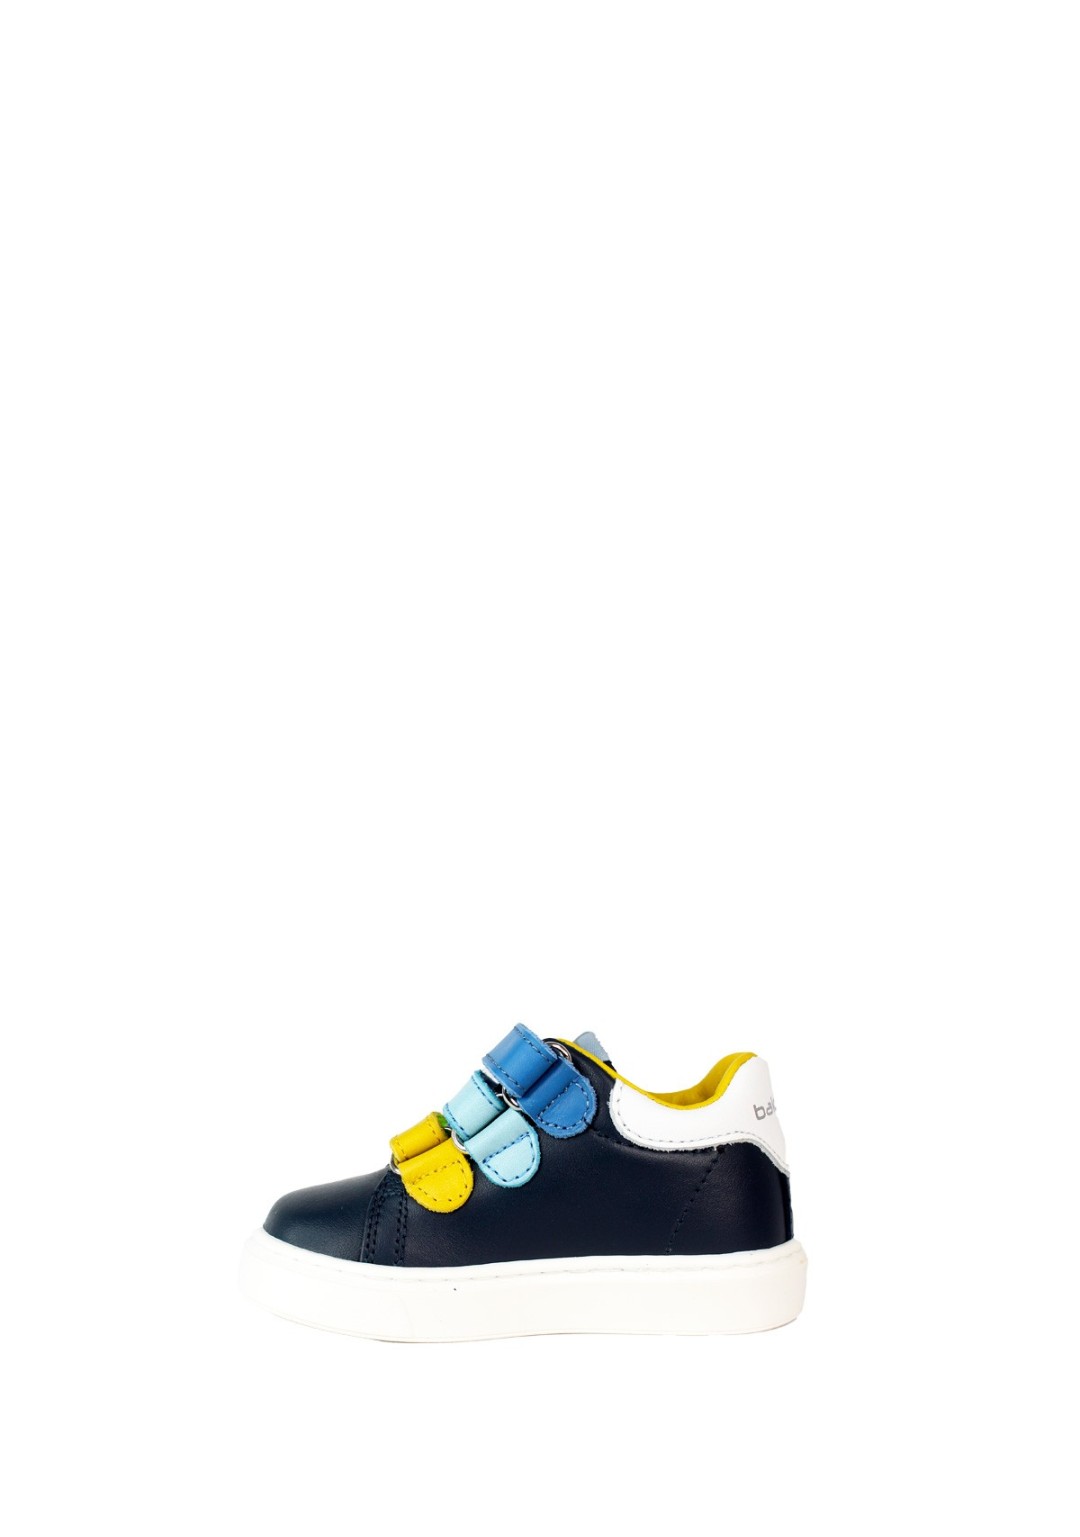 Balducci - Sneaker 3 Strappi - Bambini e ragazzi - MSP4157C